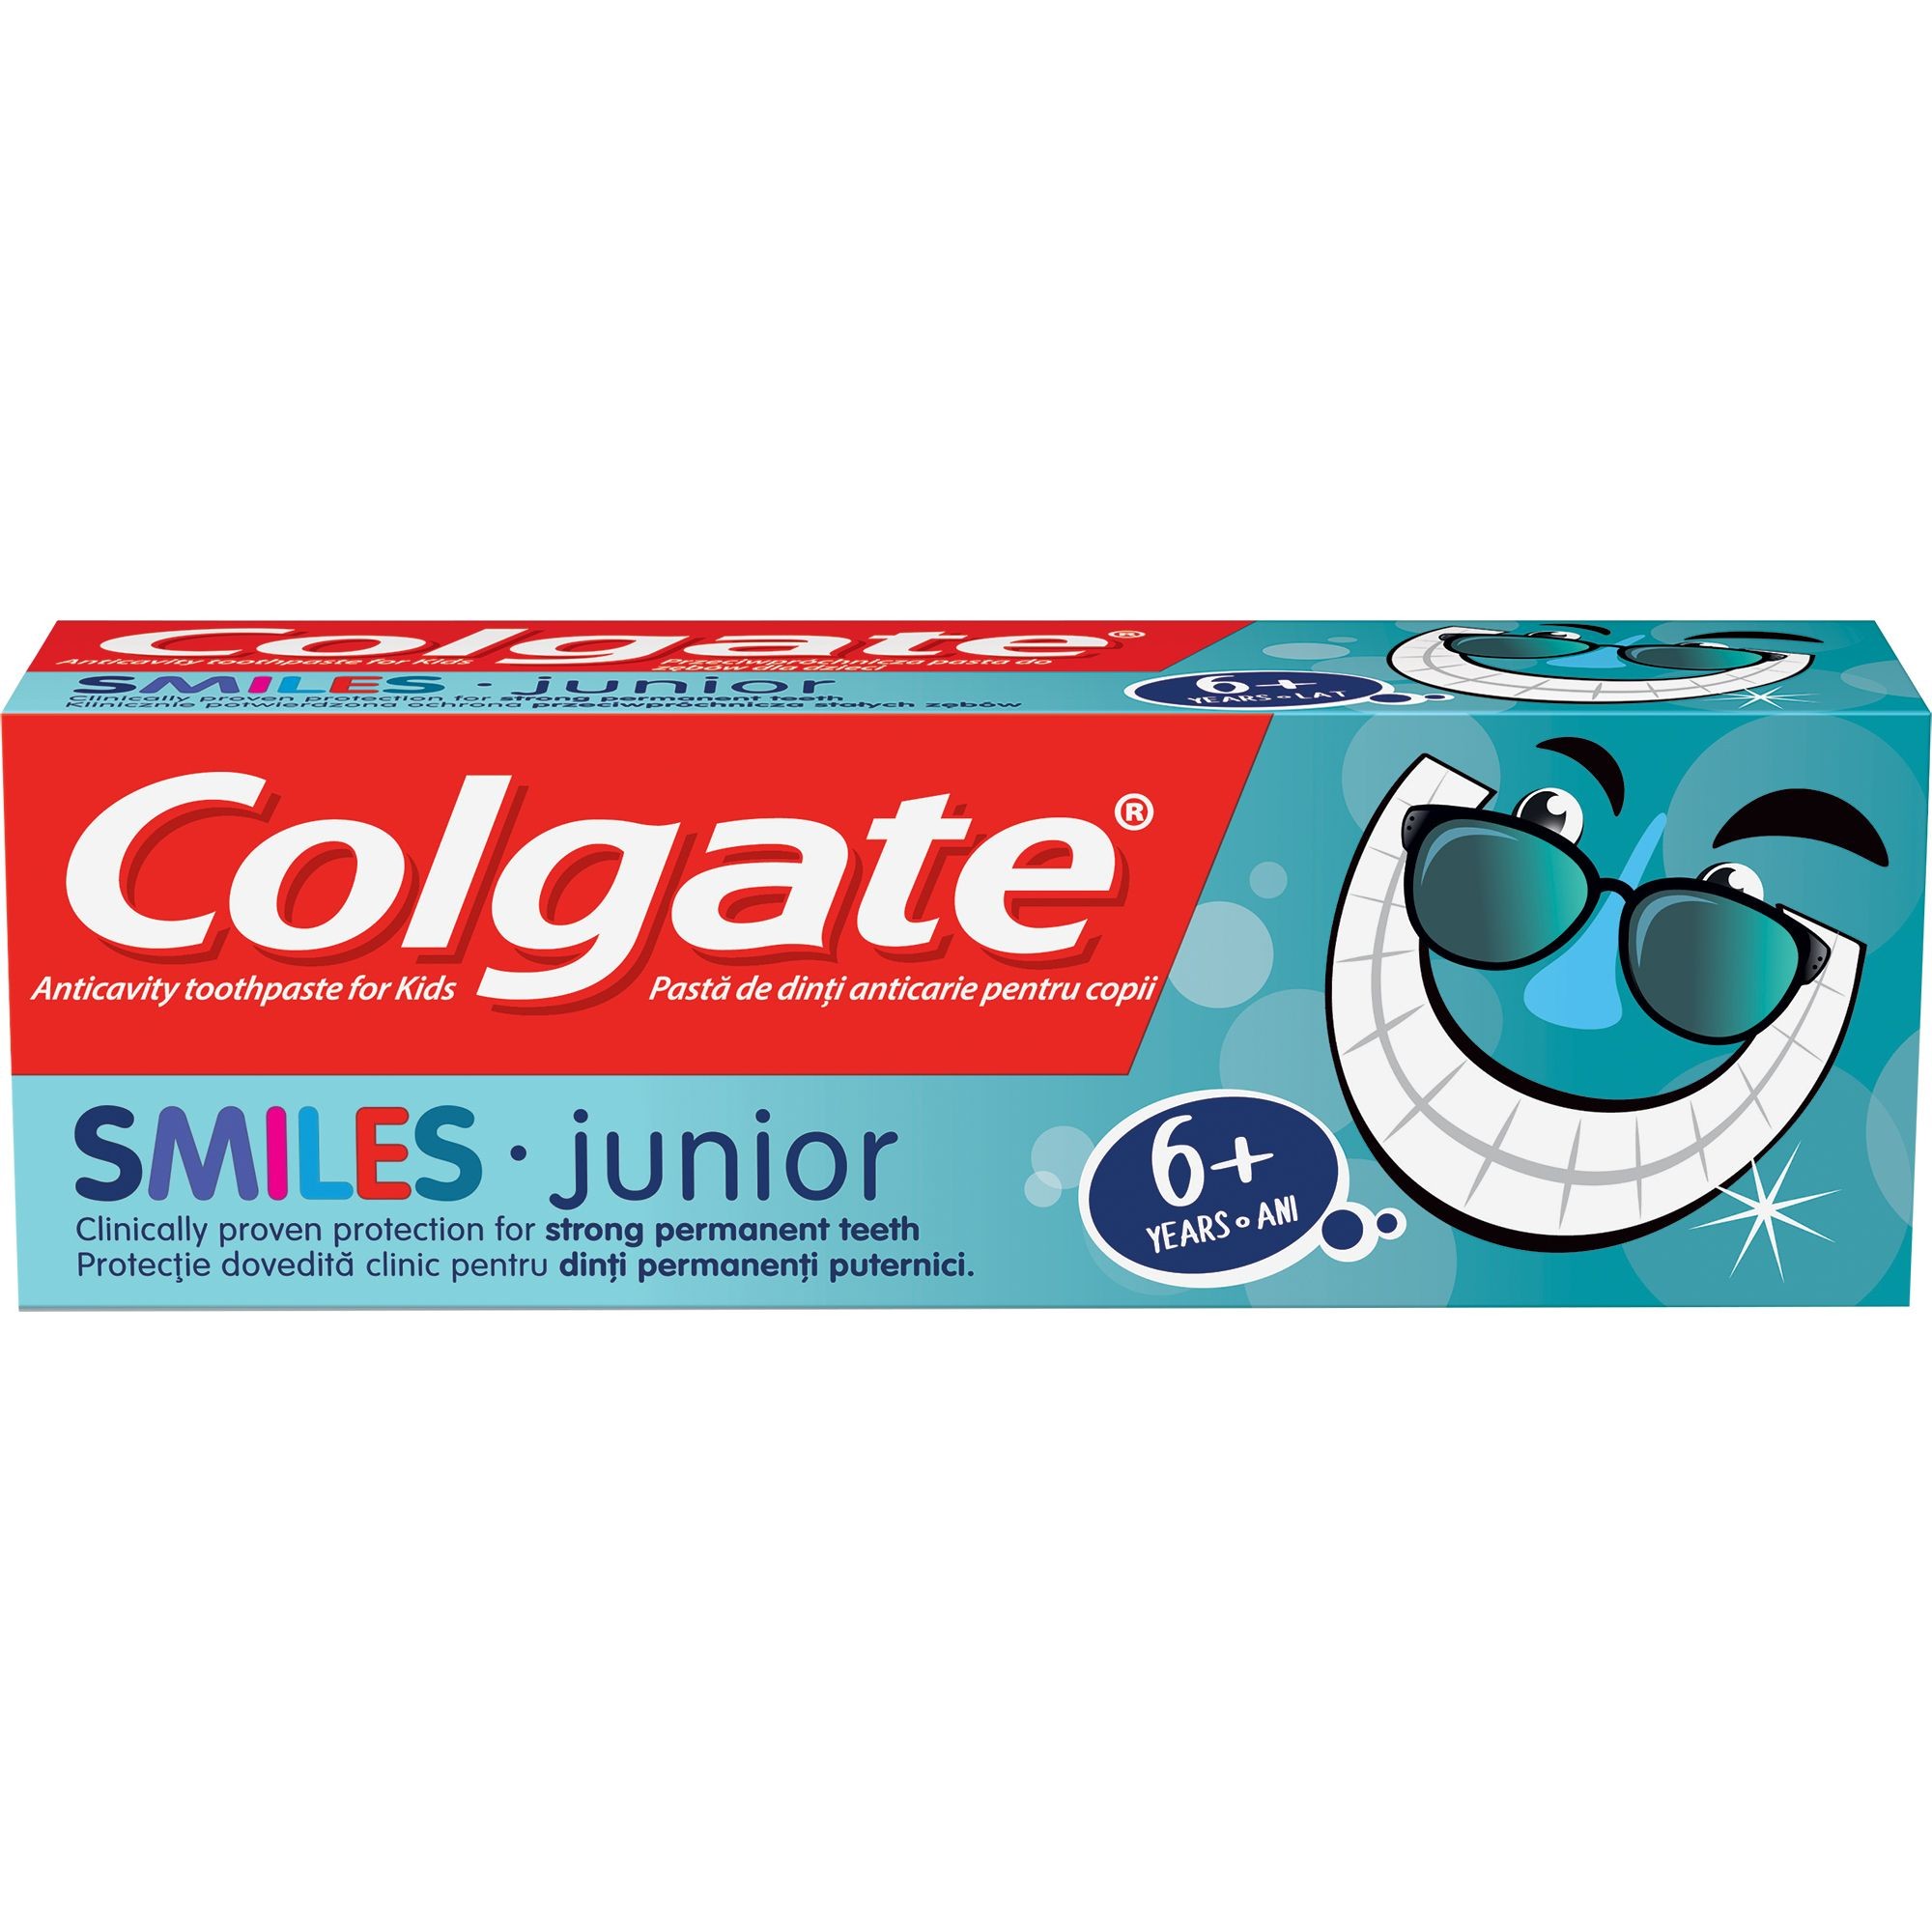 Pastă de dinți - COLGATE PASTA DE DINTI SMILES 6+ 50ML, axafarm.ro